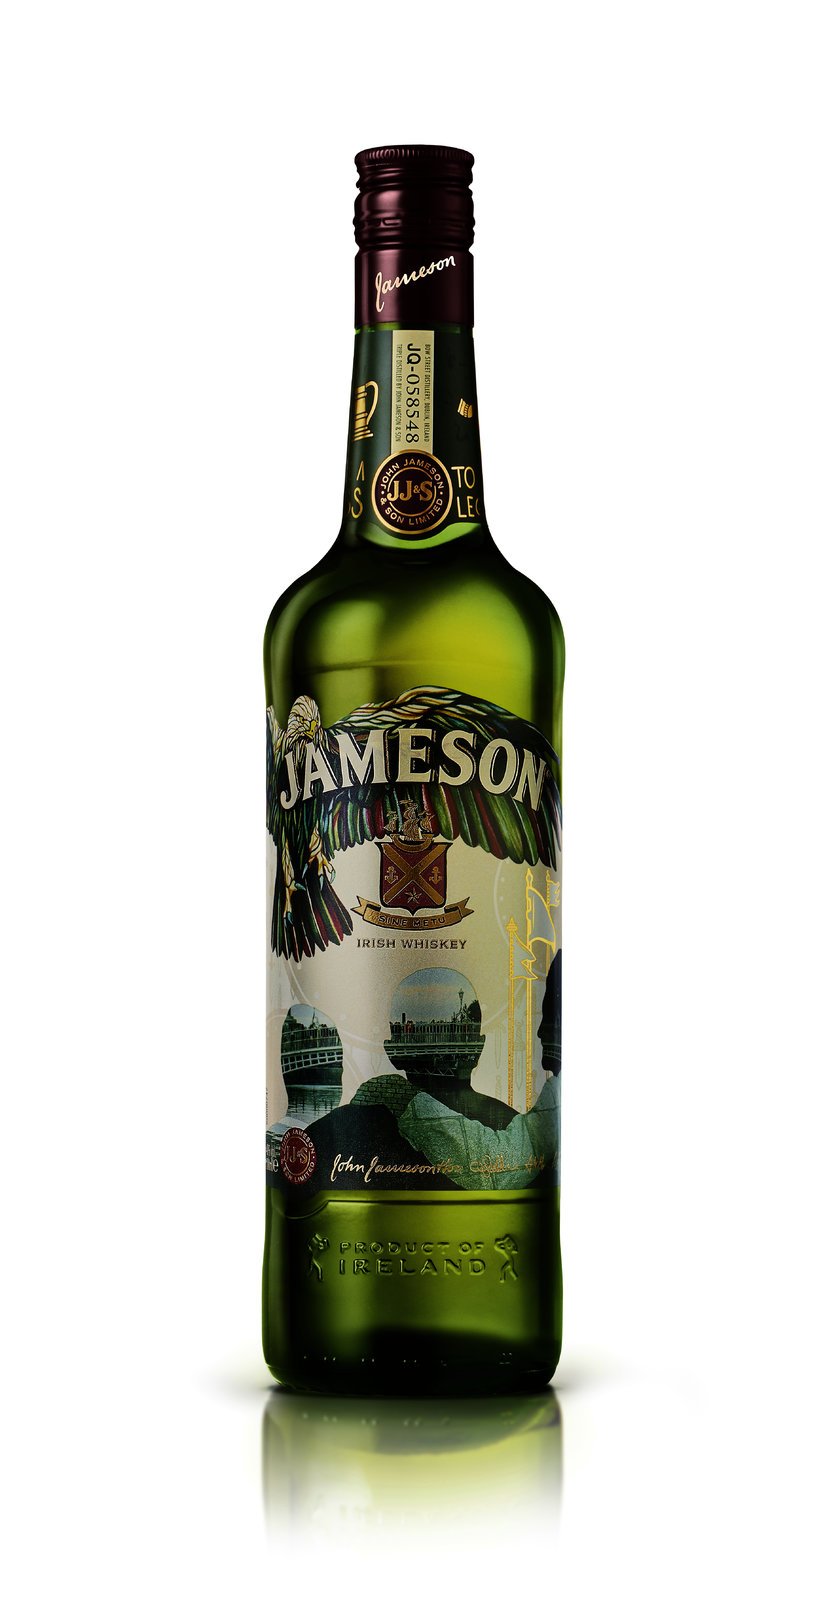 Pro bonvivána  Limitovaná edice Jameson Svatý Patrik, prodávají vybrané obchody, cena: 669 Kč